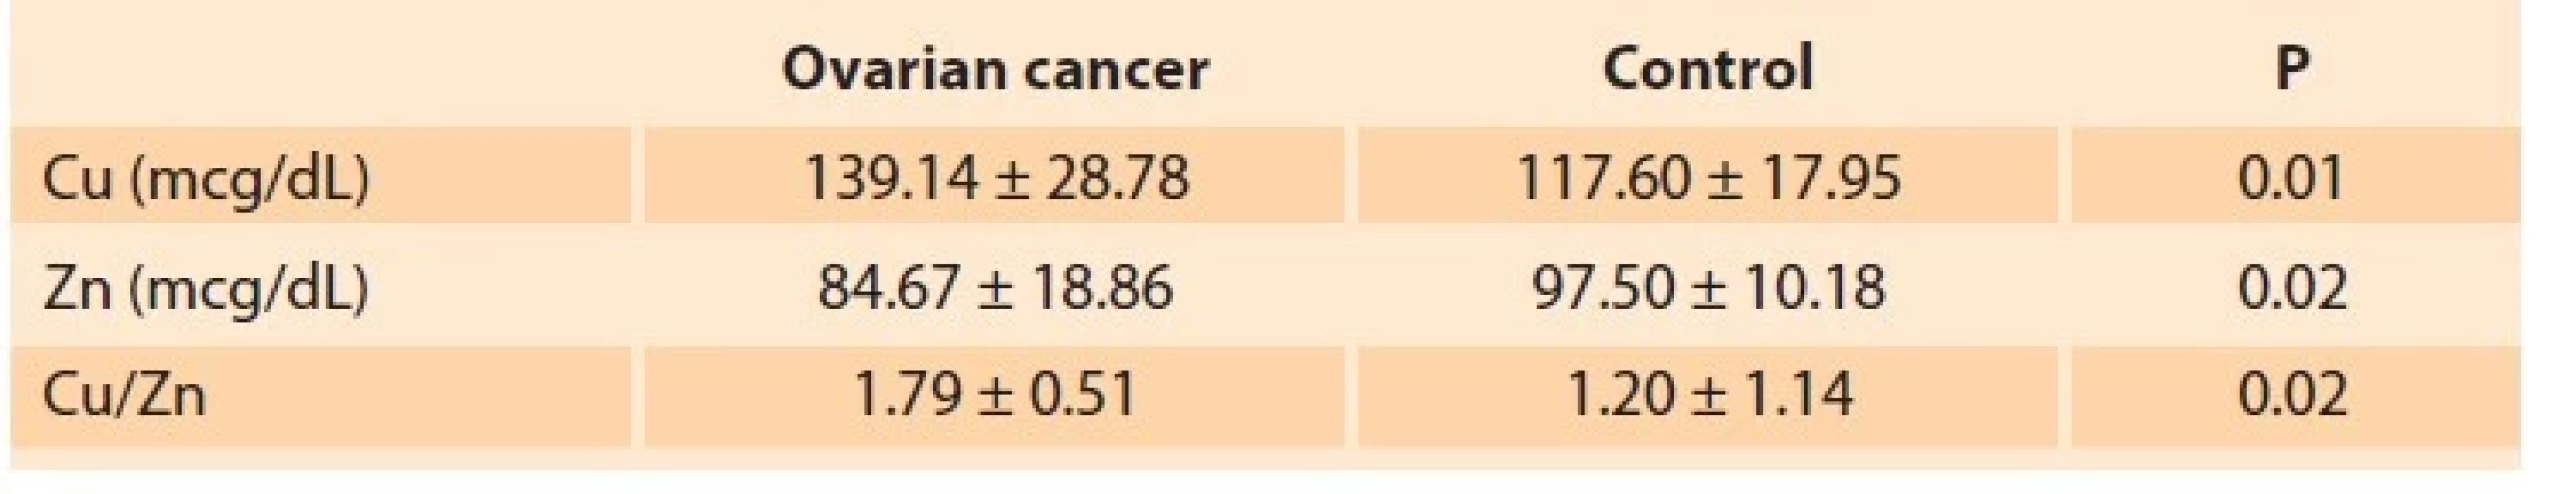 Copper (Cu) level, zinc (Zn) levels, and Cu / Zn ratio in the ovarian
cancer and control groups.<br>
Tab. 3. Hladina mědi (Cu), hladiny zinku (Zn) a poměr Cu/Zn u rakoviny
vaječníků a kontrolní skupiny.